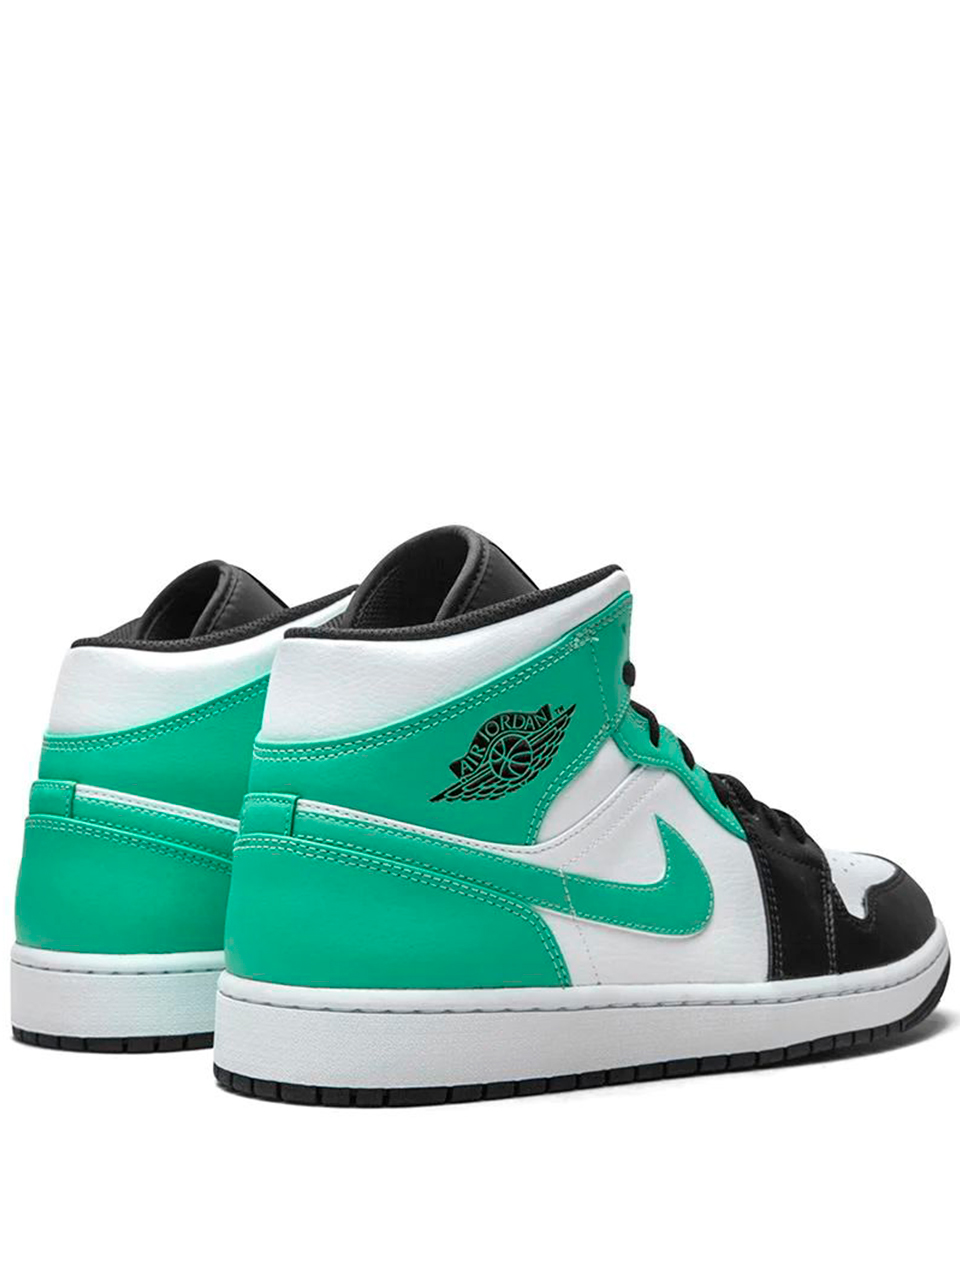 Imagem de: Tênis Nike Air Jordan 1 Mid Verde e Preto